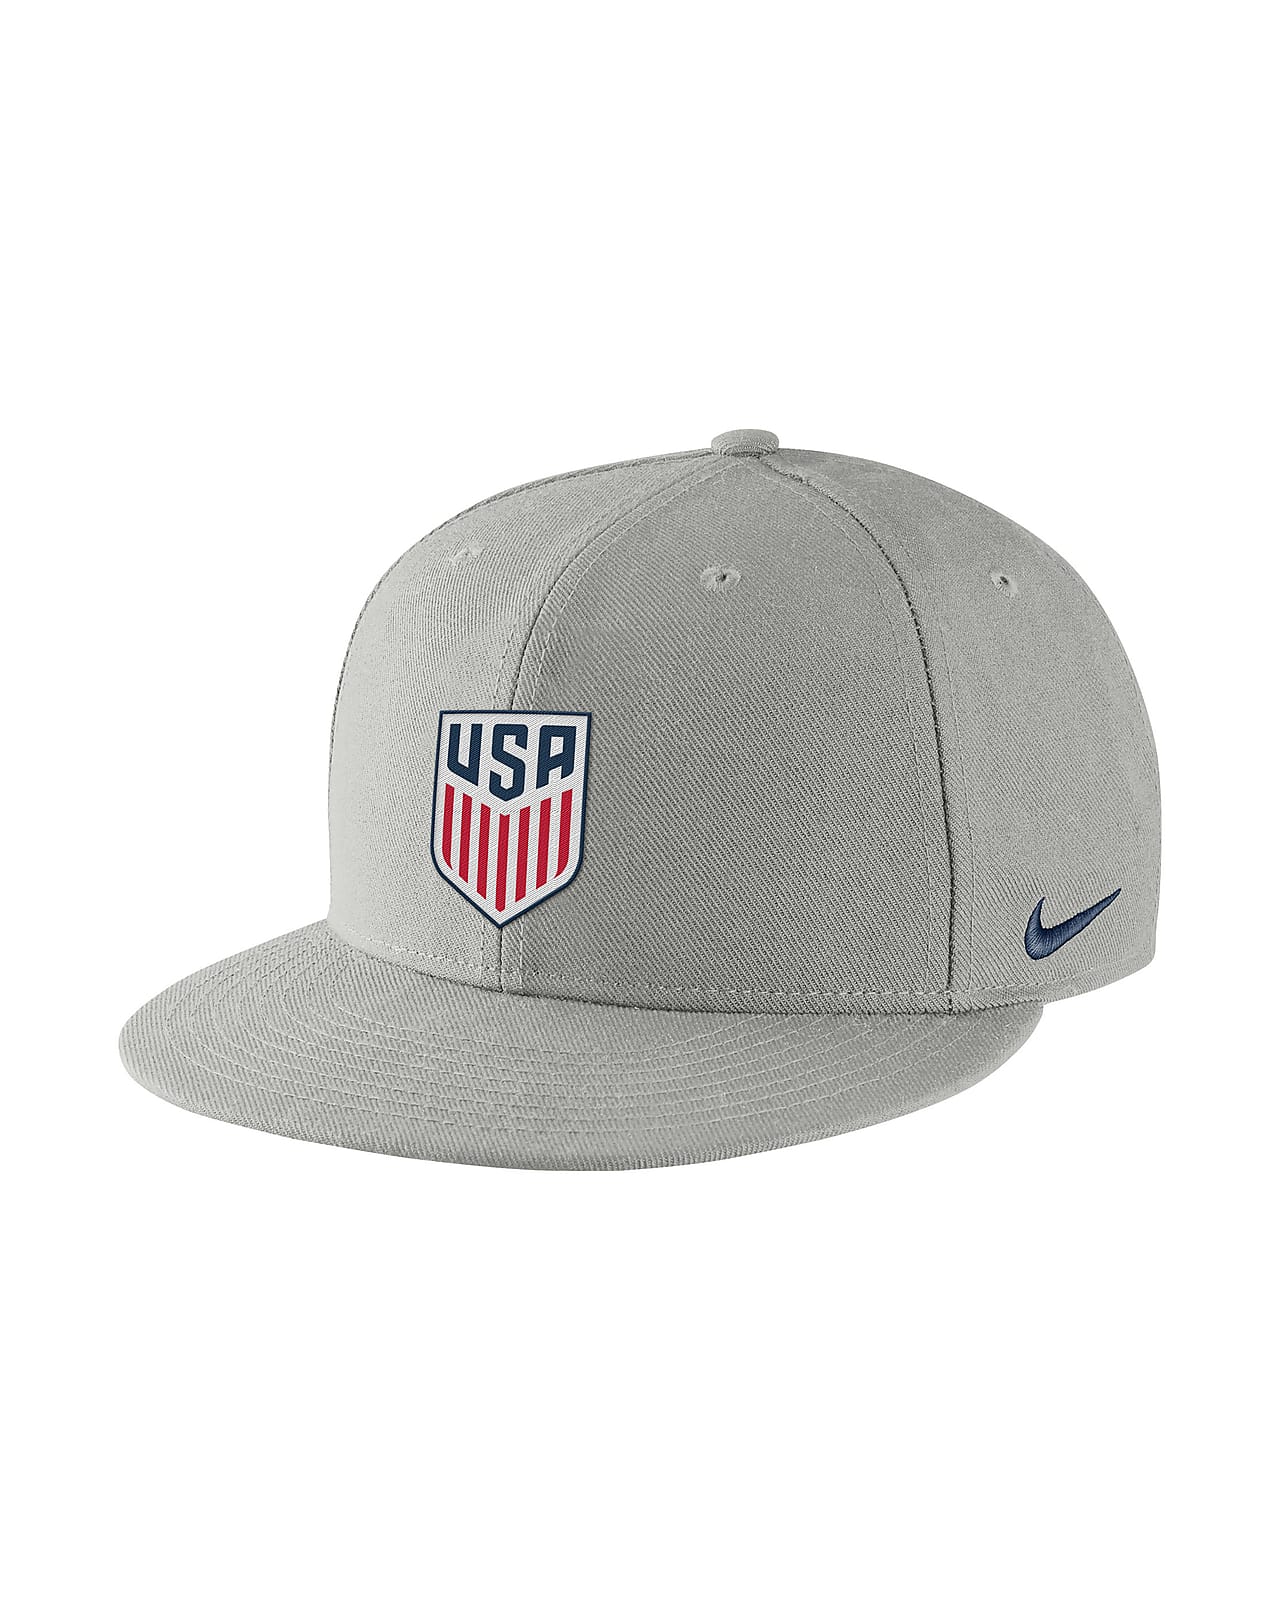 USMNT Pro Men's Hat. Nike.com